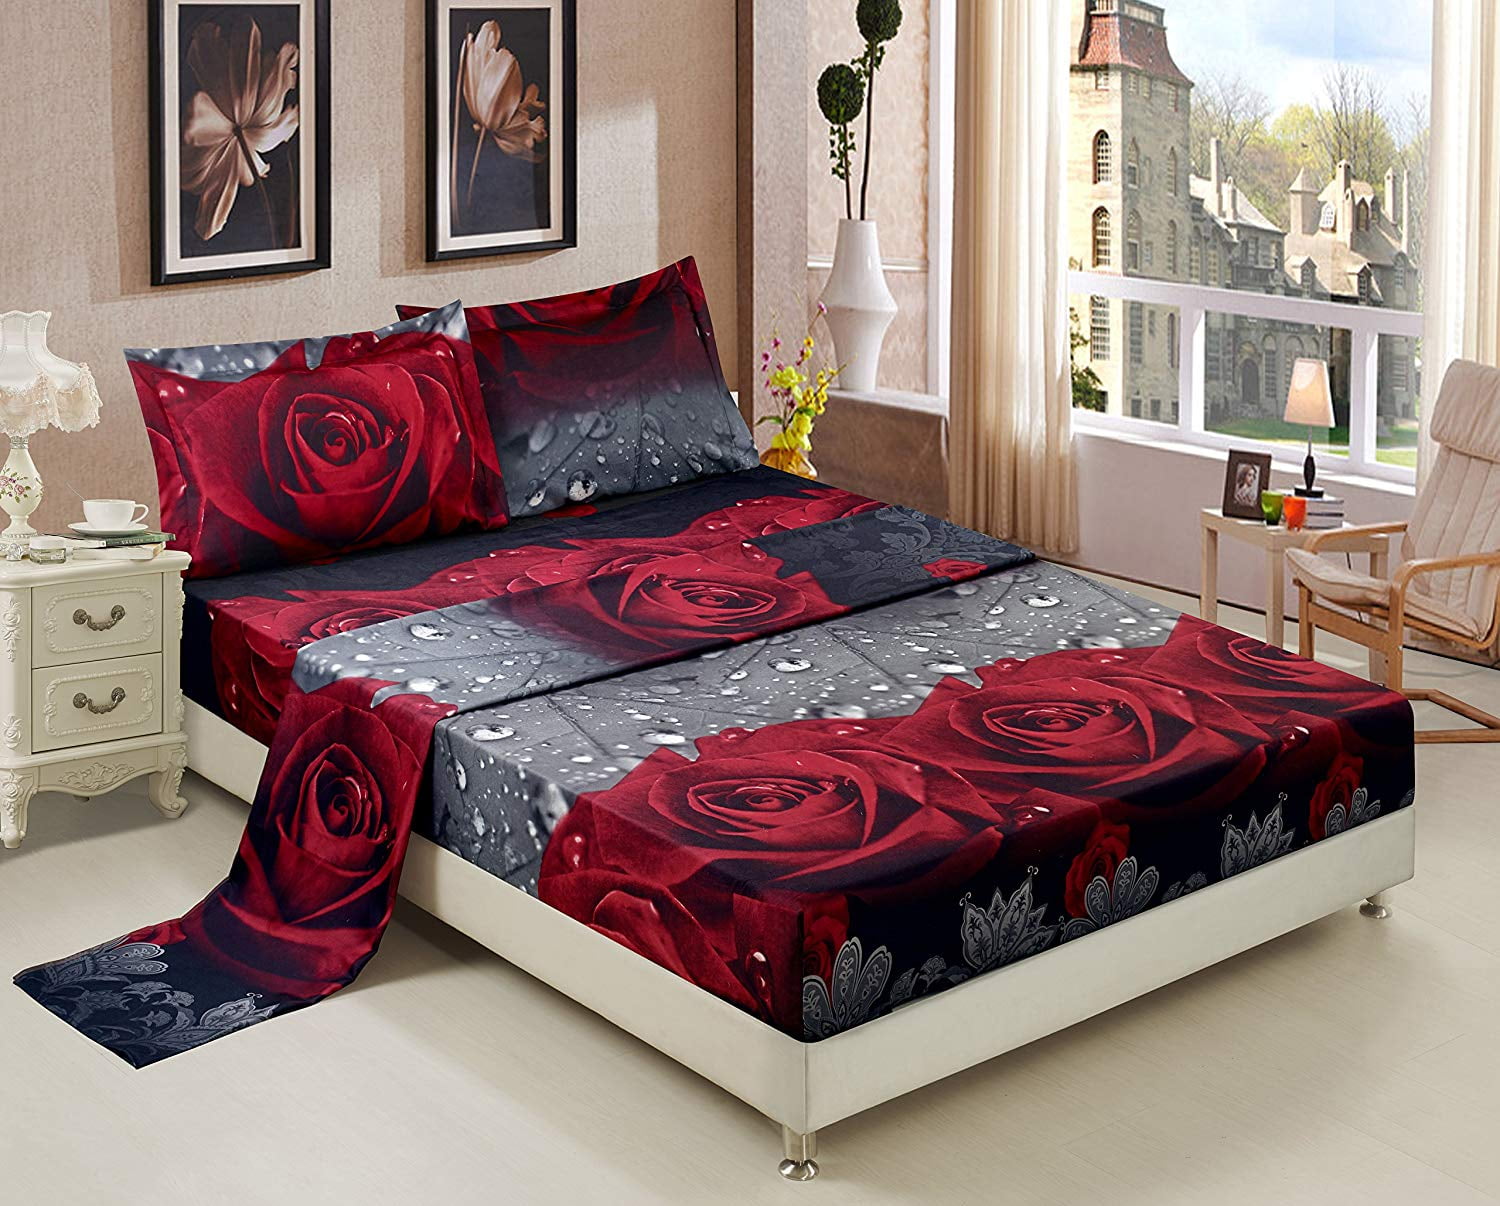 3d Bed Sheet Set King 4 Piece Rose, King Bed Sheet Set